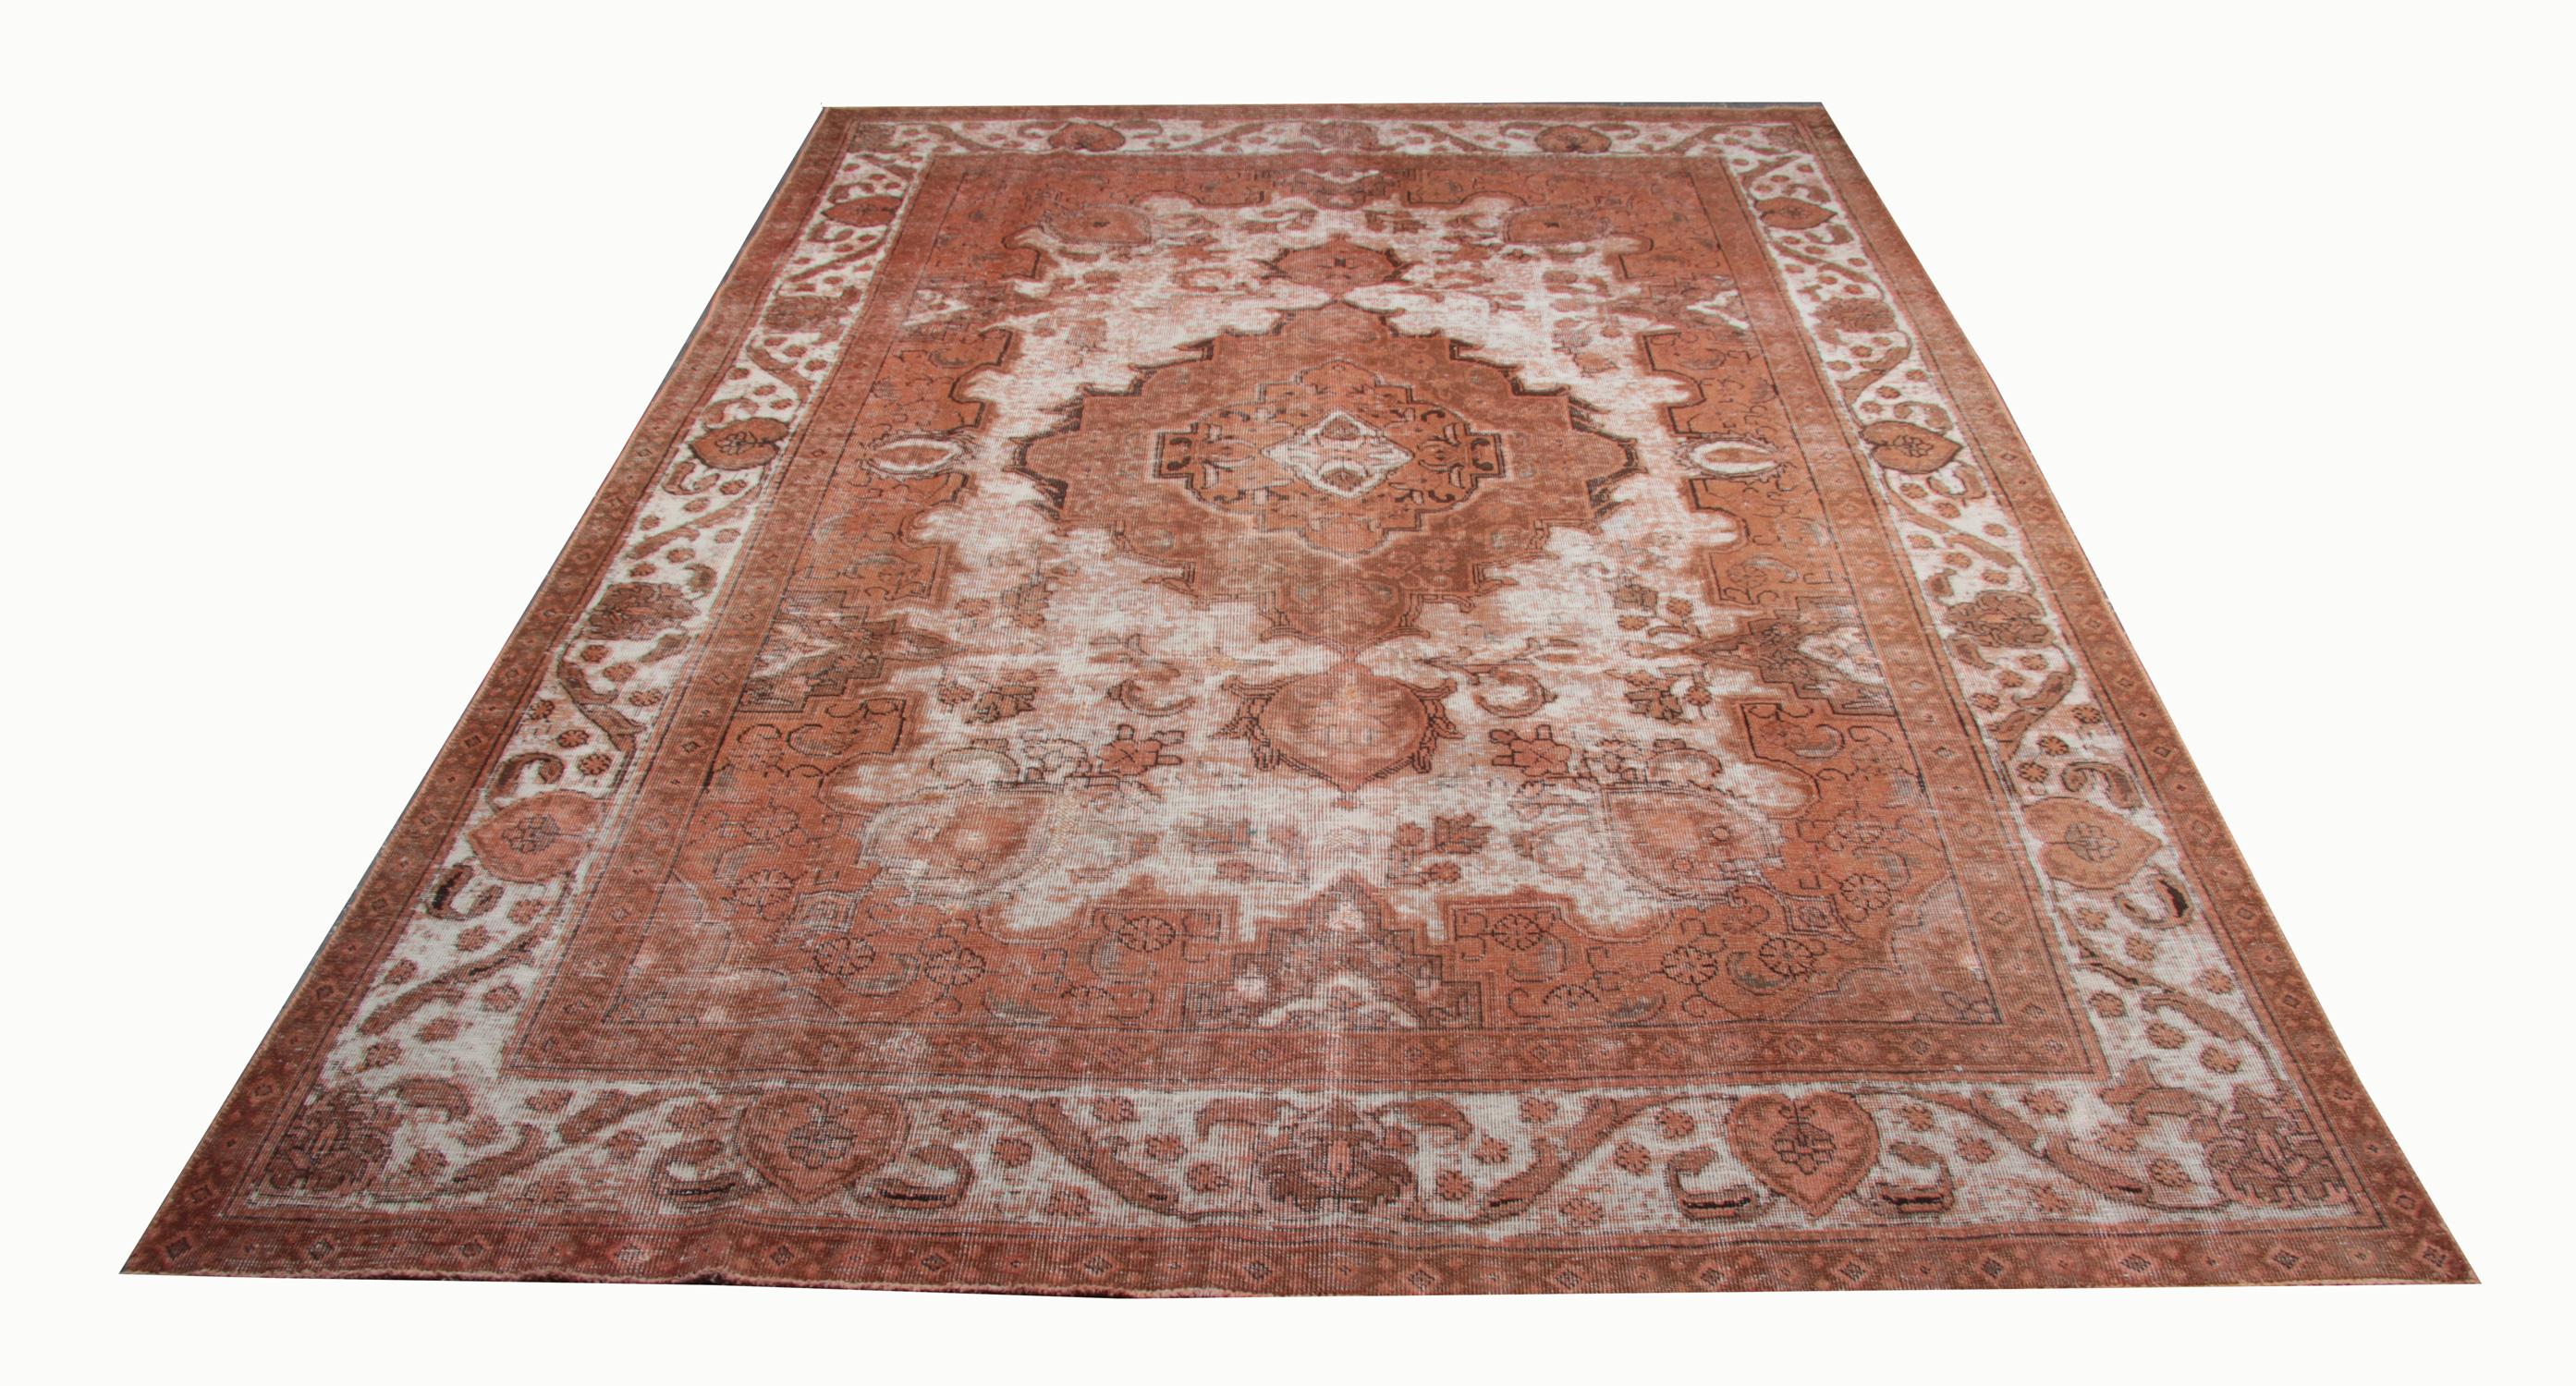 Ce tapis en laine orientale a été tissé à la main à la fin du XXe siècle et présente un motif médaillon exquis. Tissé symétriquement avec un design complexe comprenant des éléments floraux et géométriques. Les couleurs sont simples, avec une palette